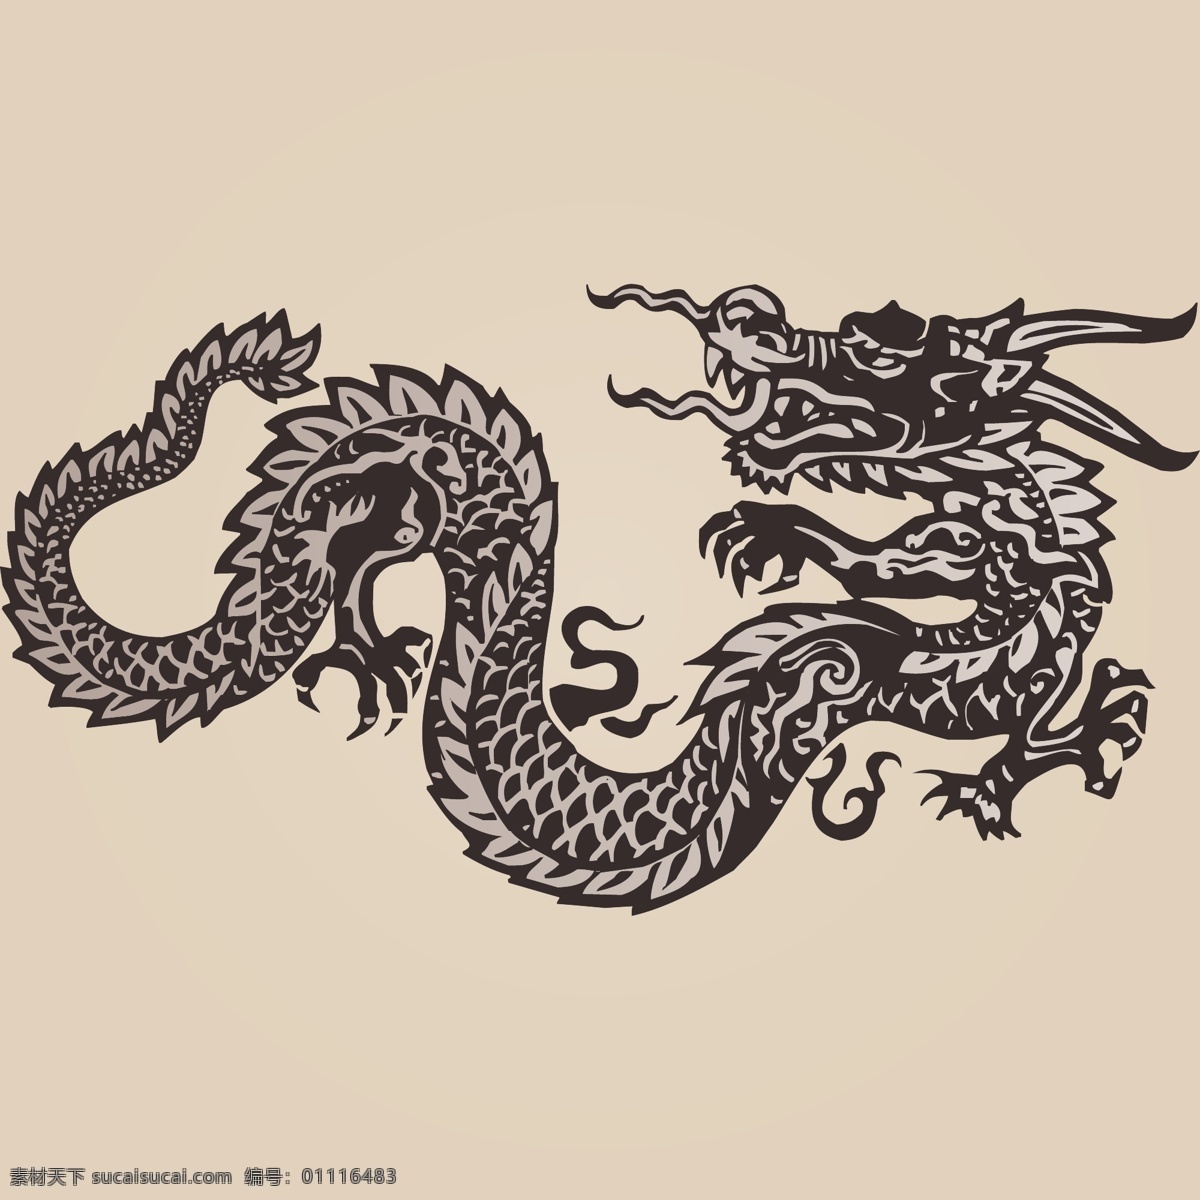 中国 龙 神龙 矢量 中国龙神龙 矢量素材 中国龙 纹身 龙纹身 龙矢量素材 五爪金龙 文化艺术 传统文化